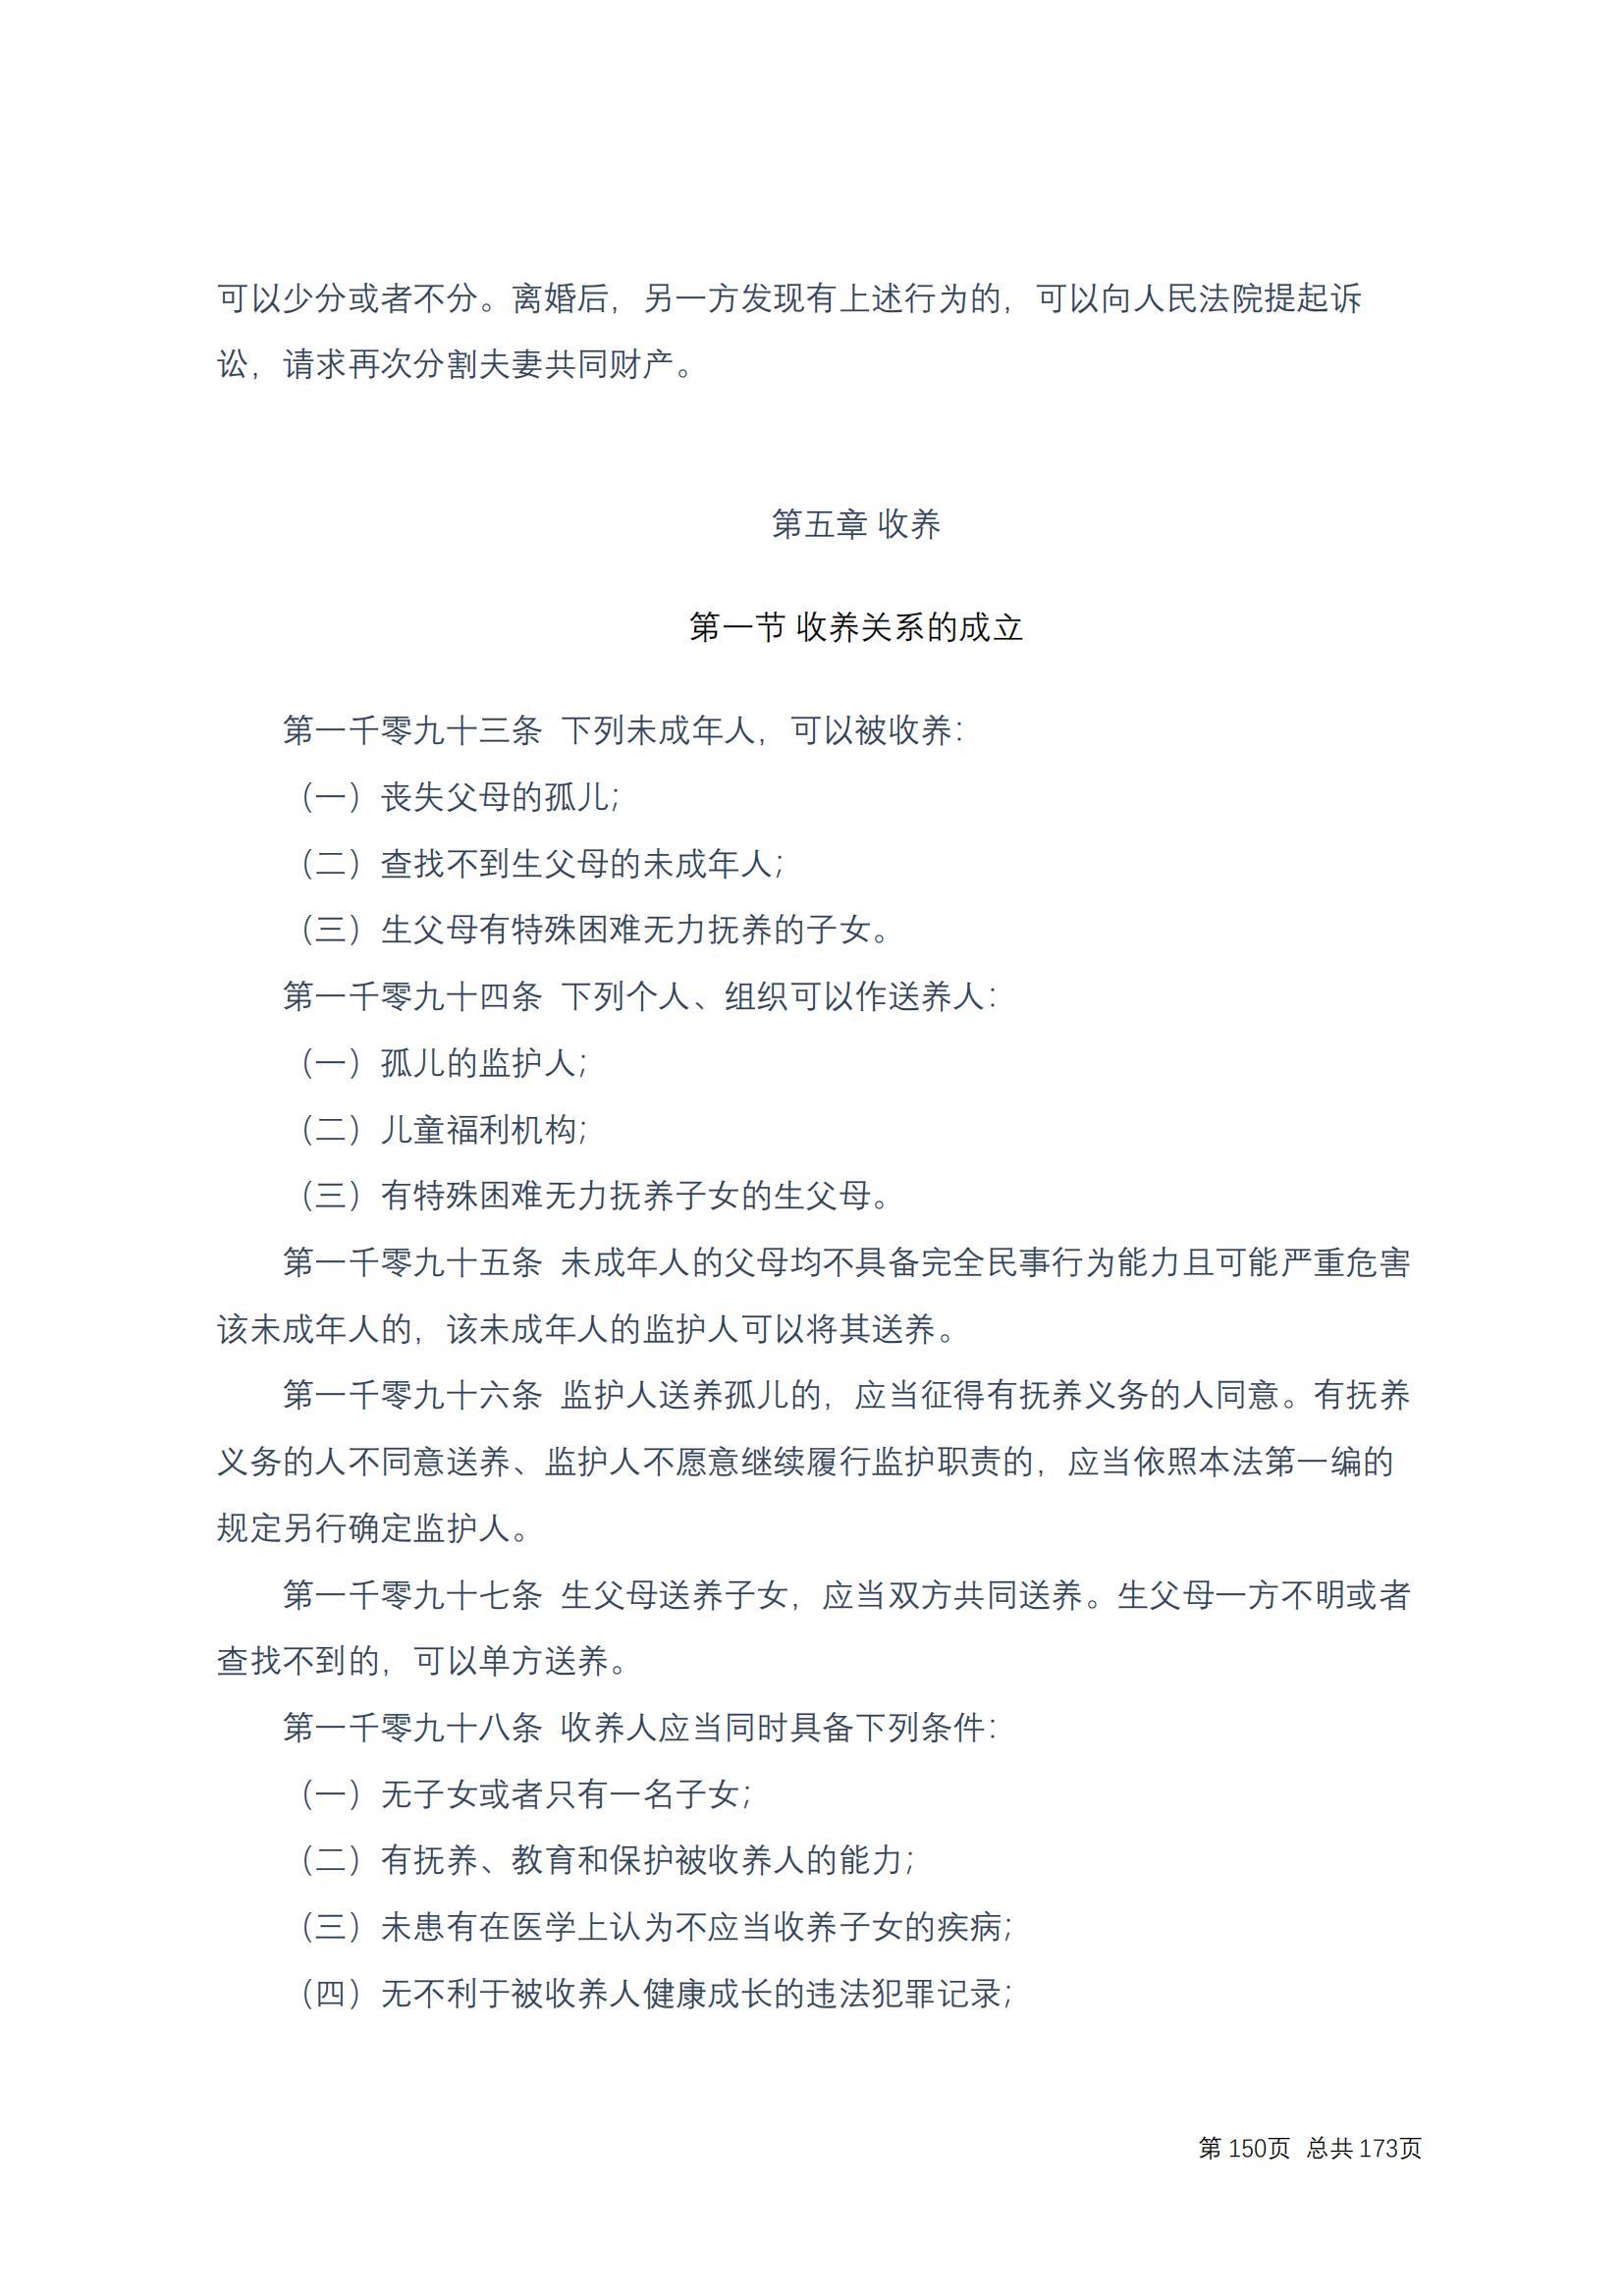 中华人民共和国民法典 修改过_149